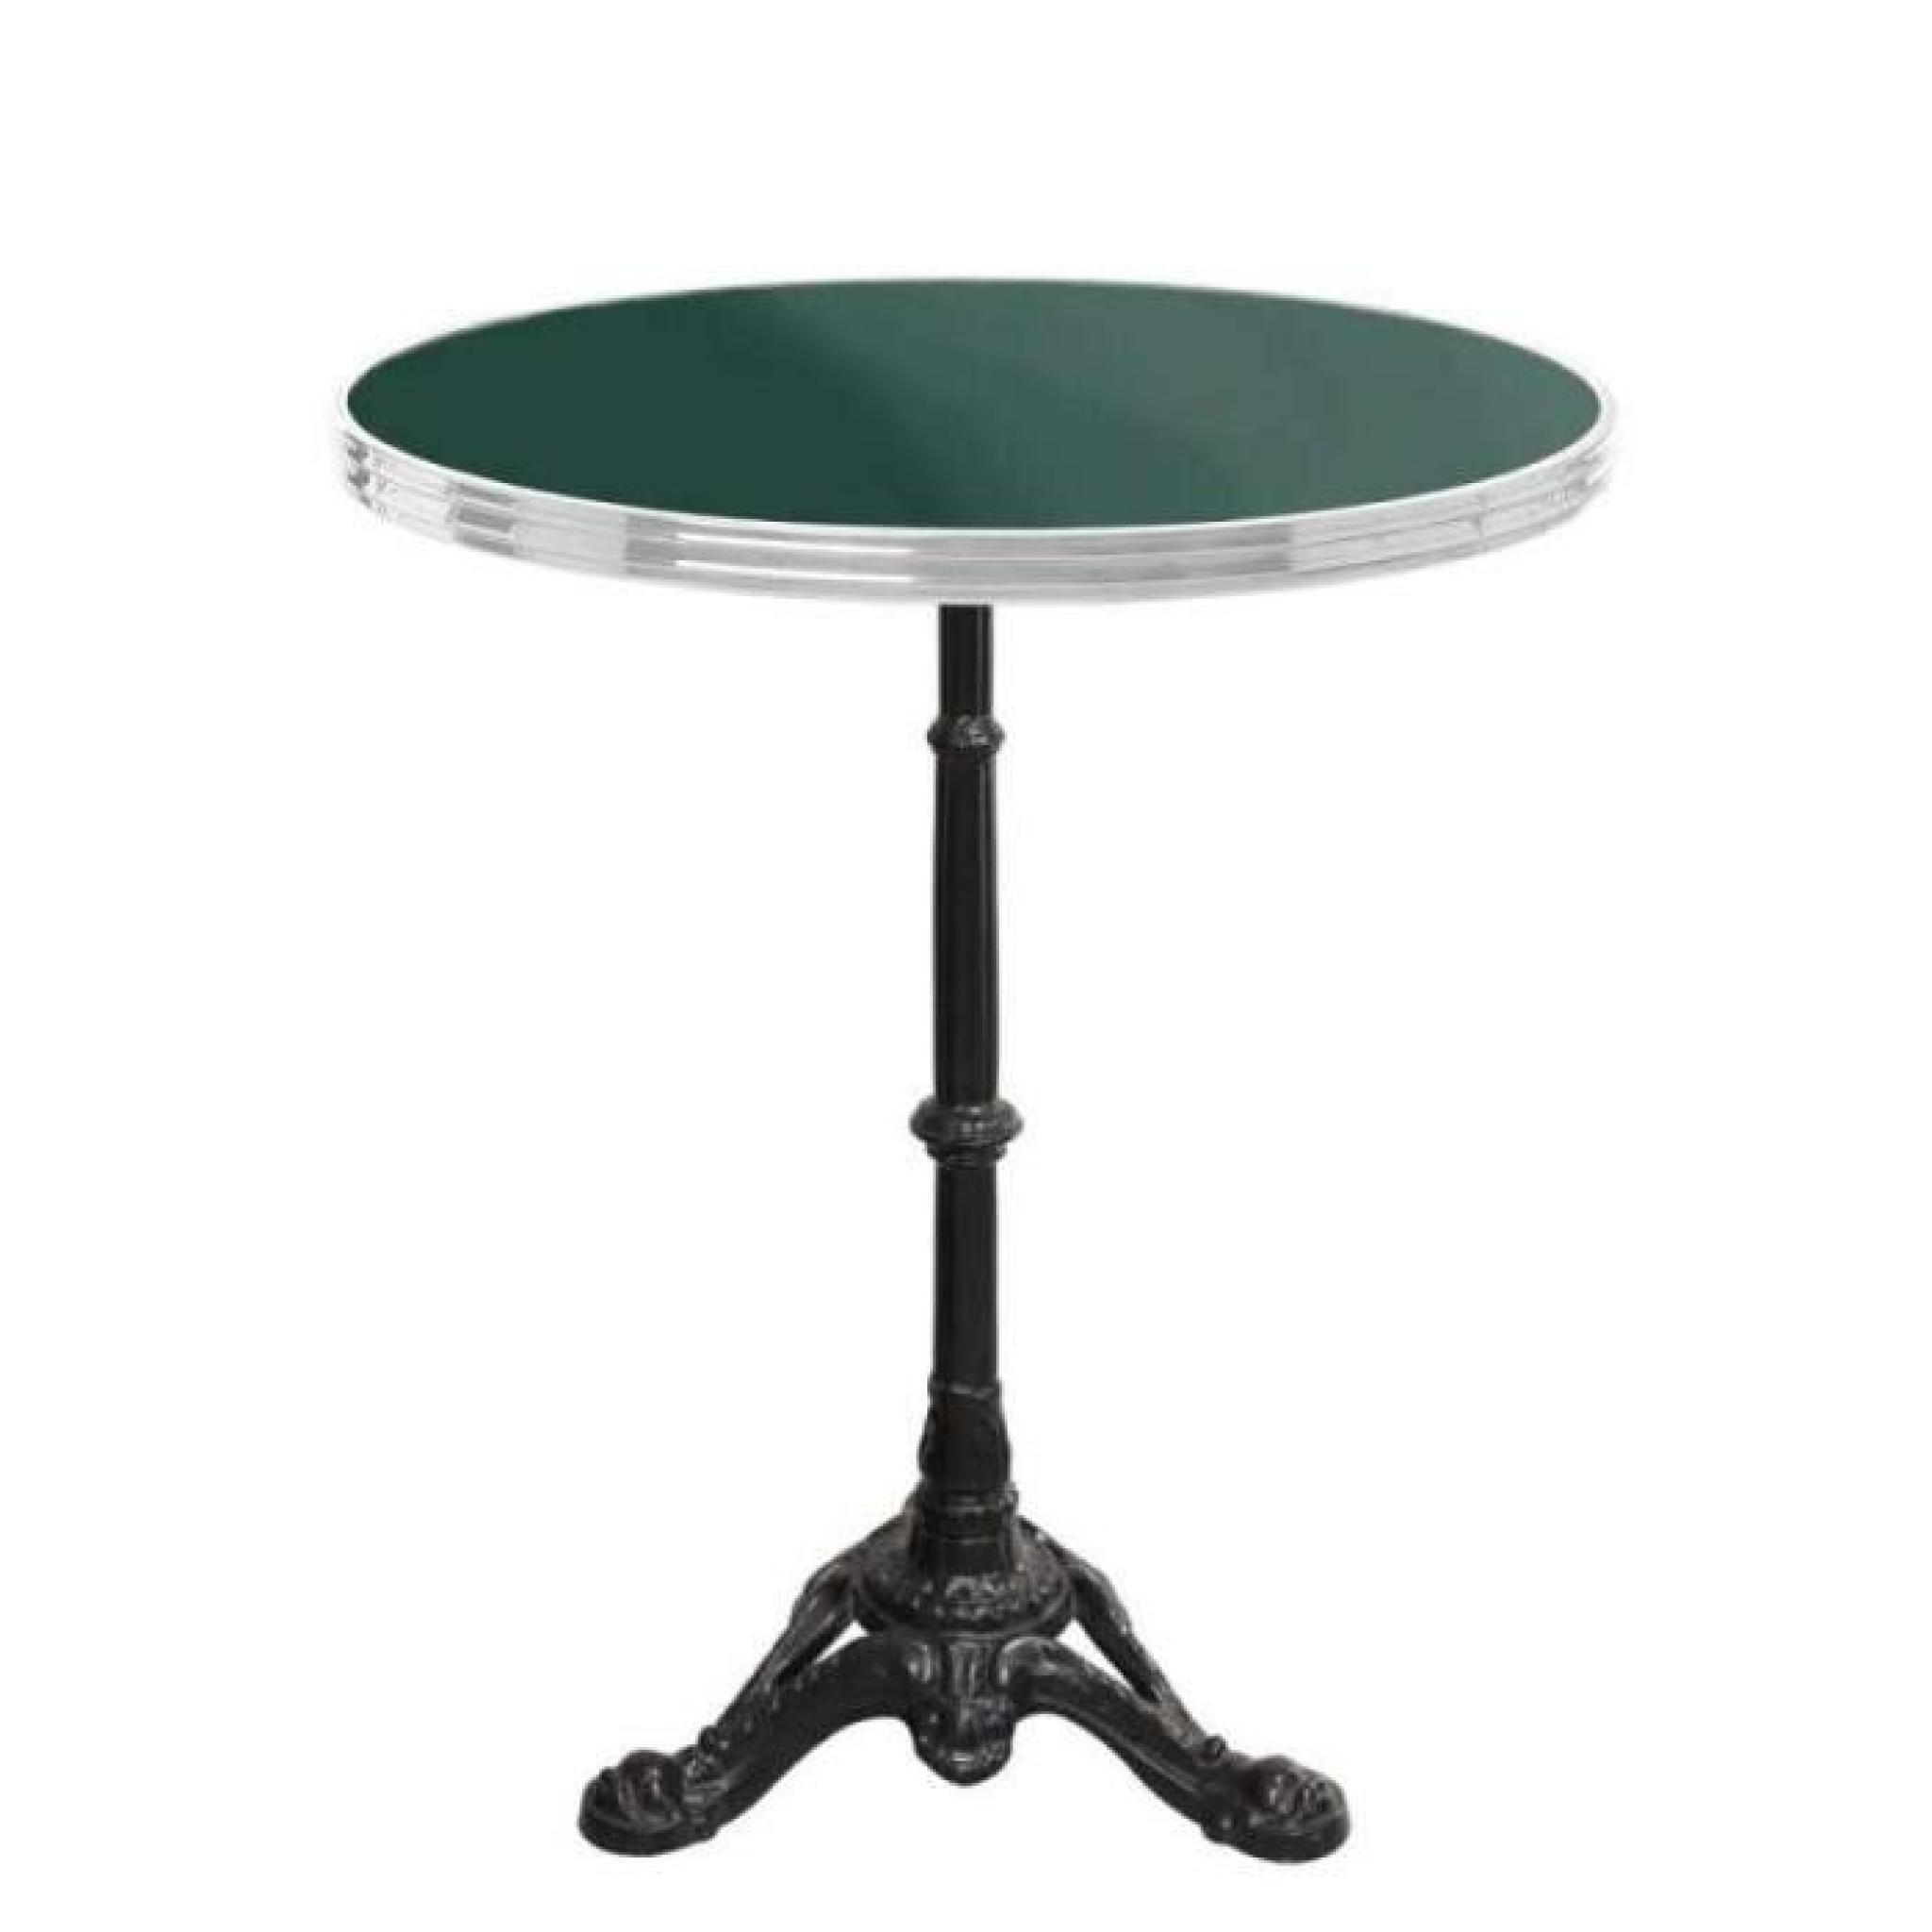 table bistrot ronde vert mousse avec cerclage en inox - h70 x d60 cm pas cher